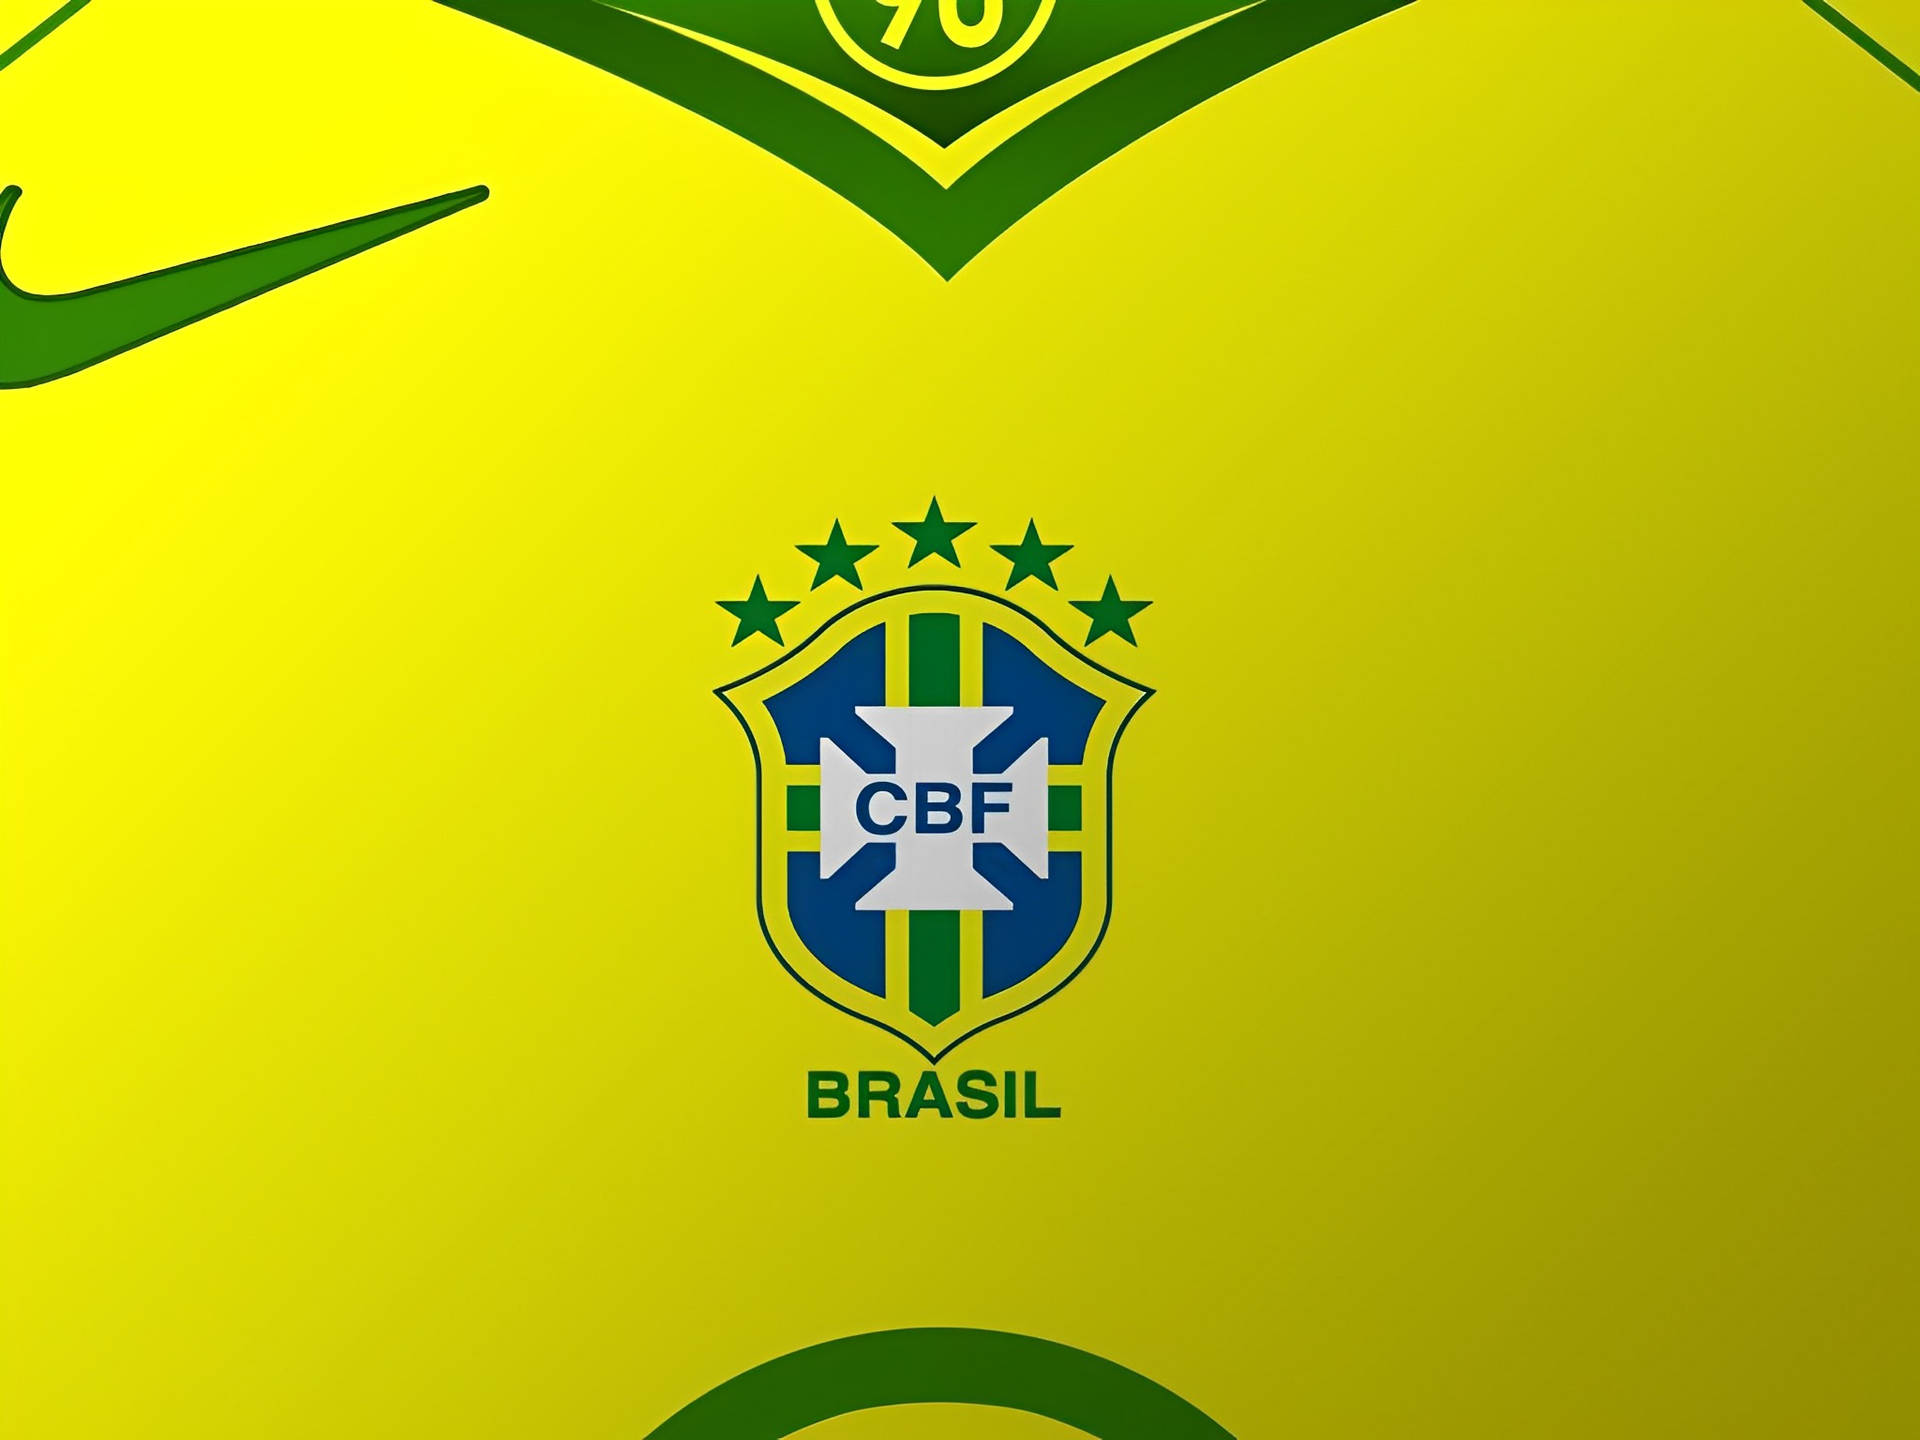 Brazil National Football Team CBF Logo Wallpaper